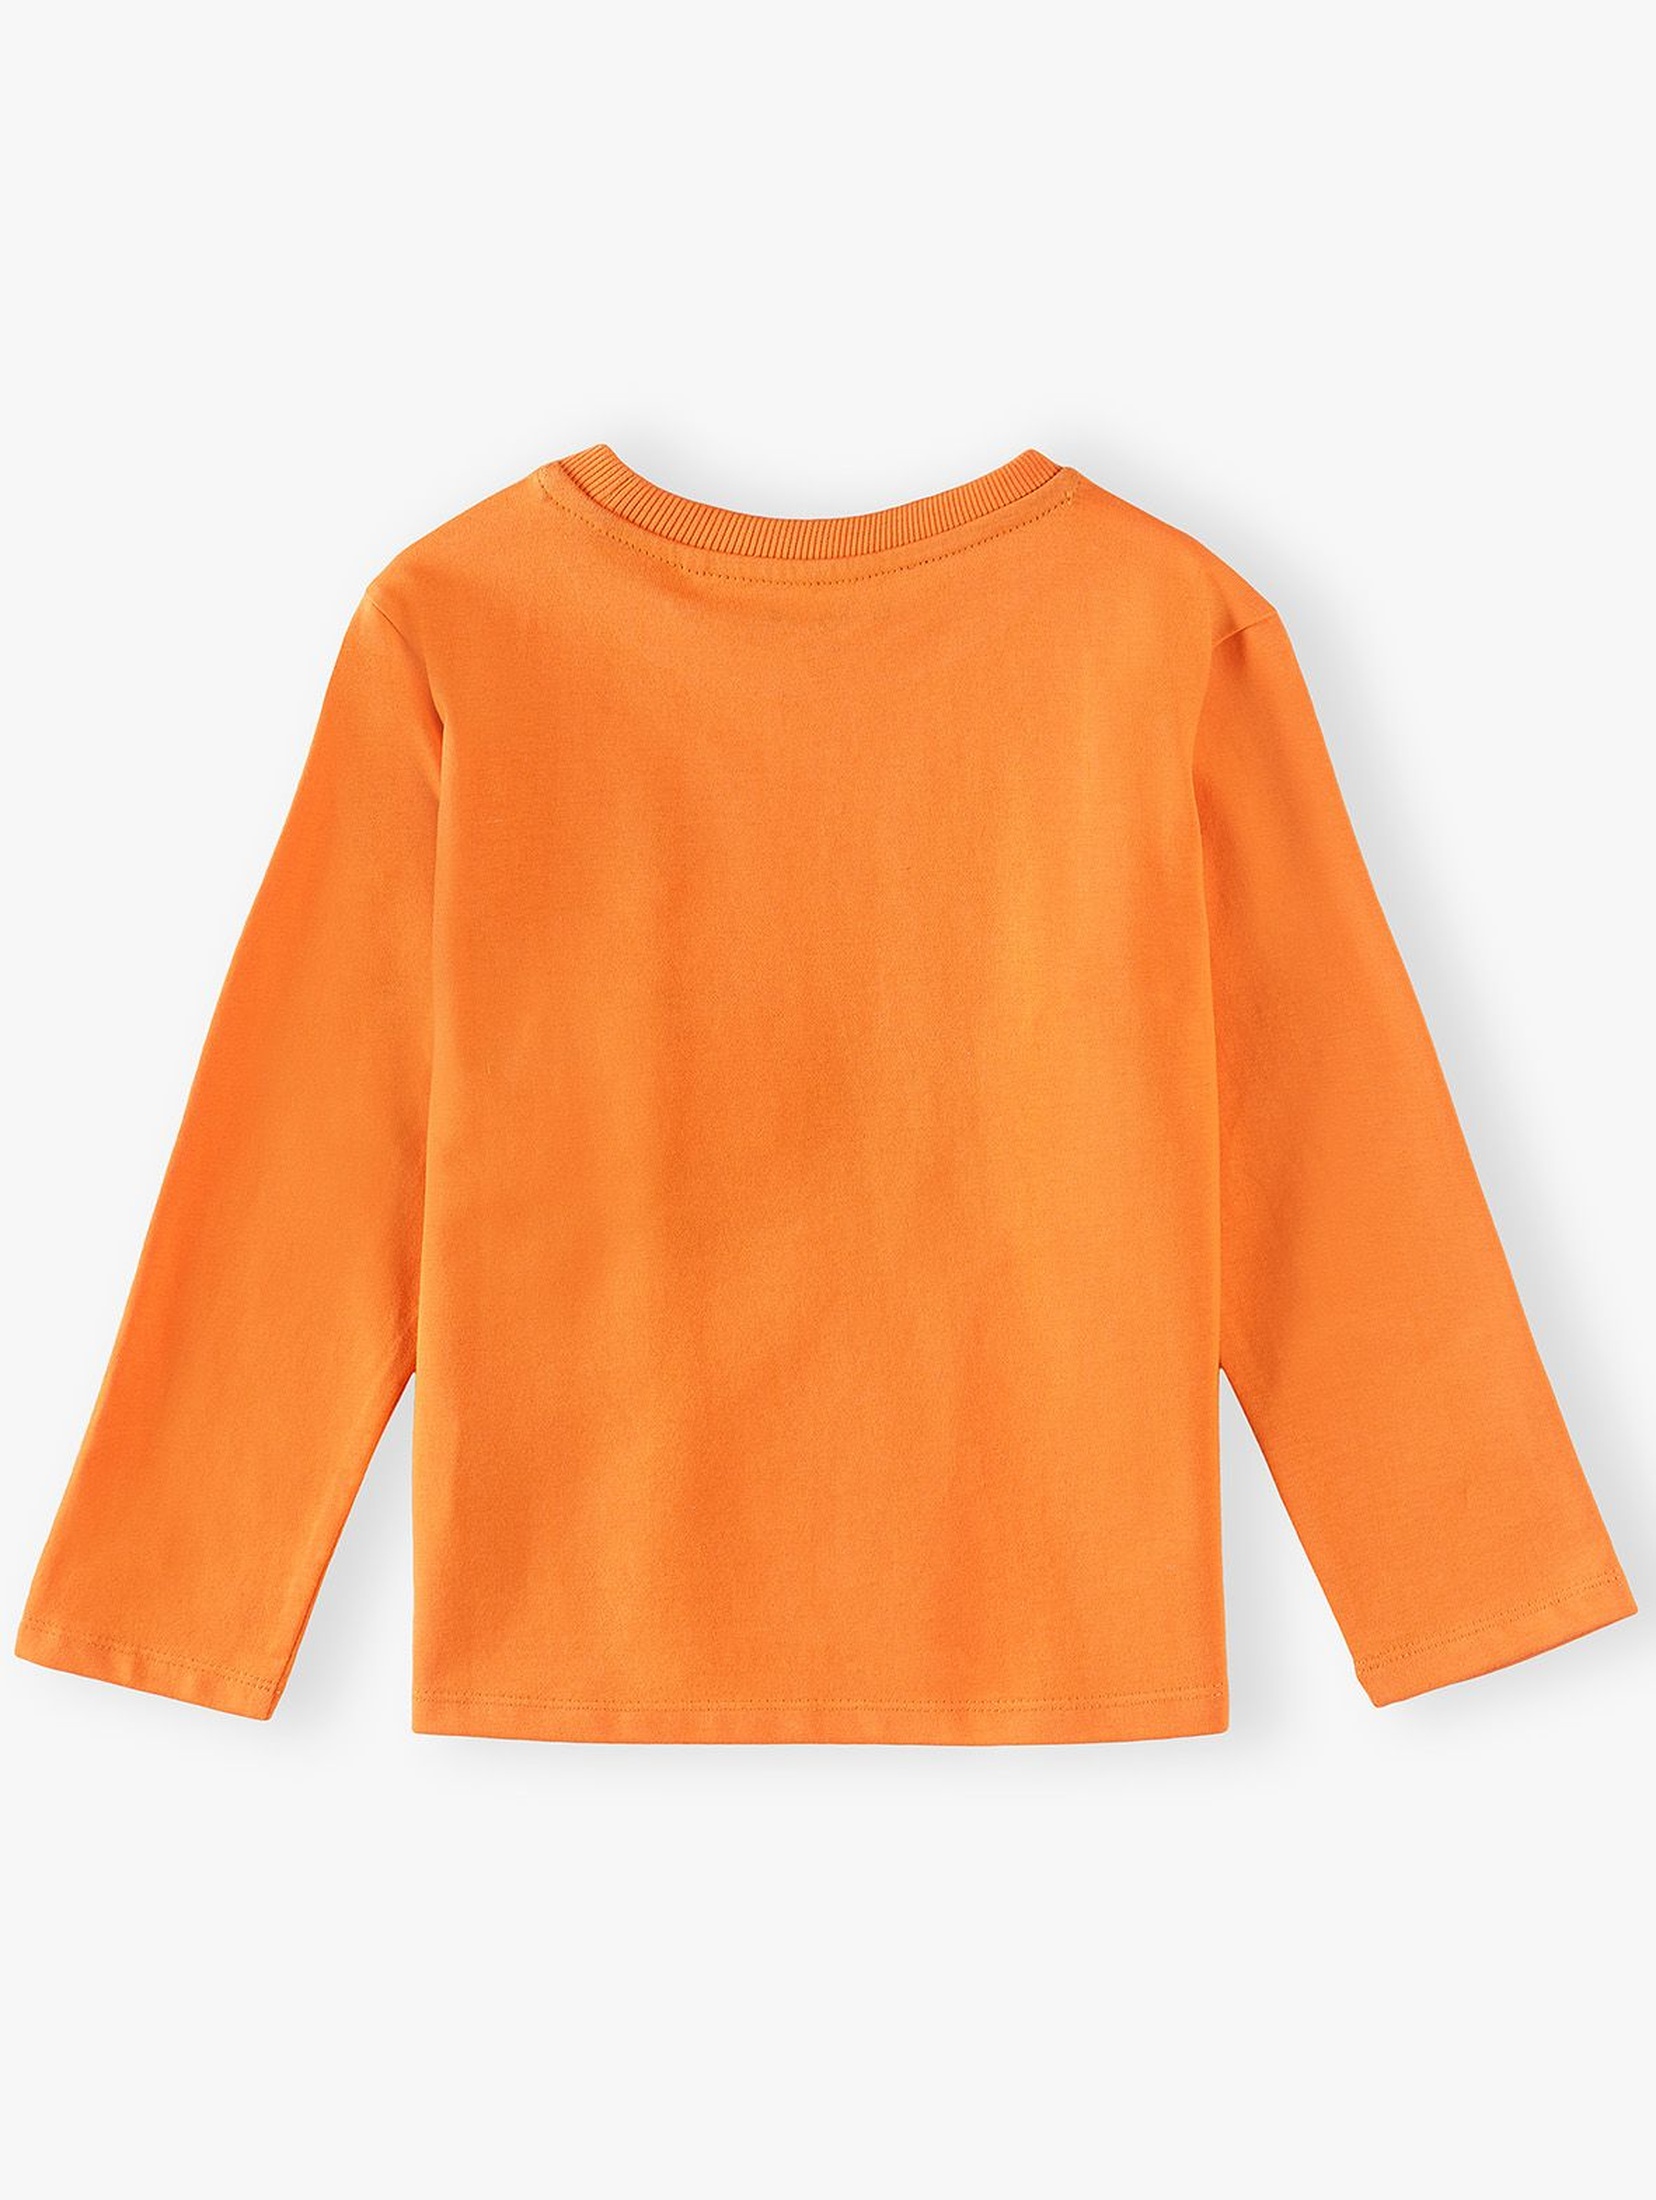 Bluzka chłopięca z motywem Halloween - pomarańczowa